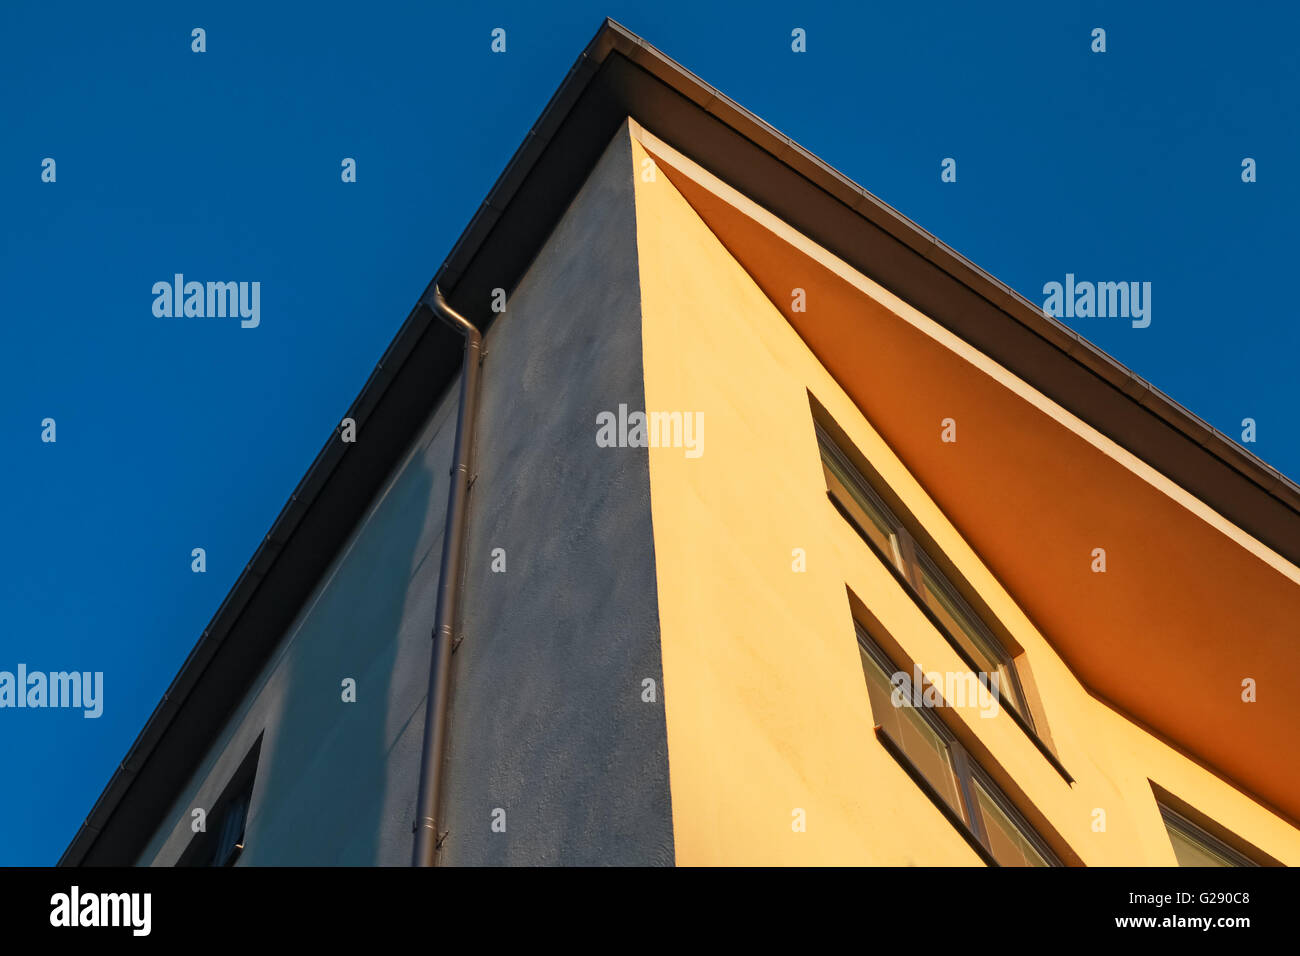 Abstrakte Fragment der Gegenwartsarchitektur, gelbe Wände unter tiefblauem Himmel Stockfoto